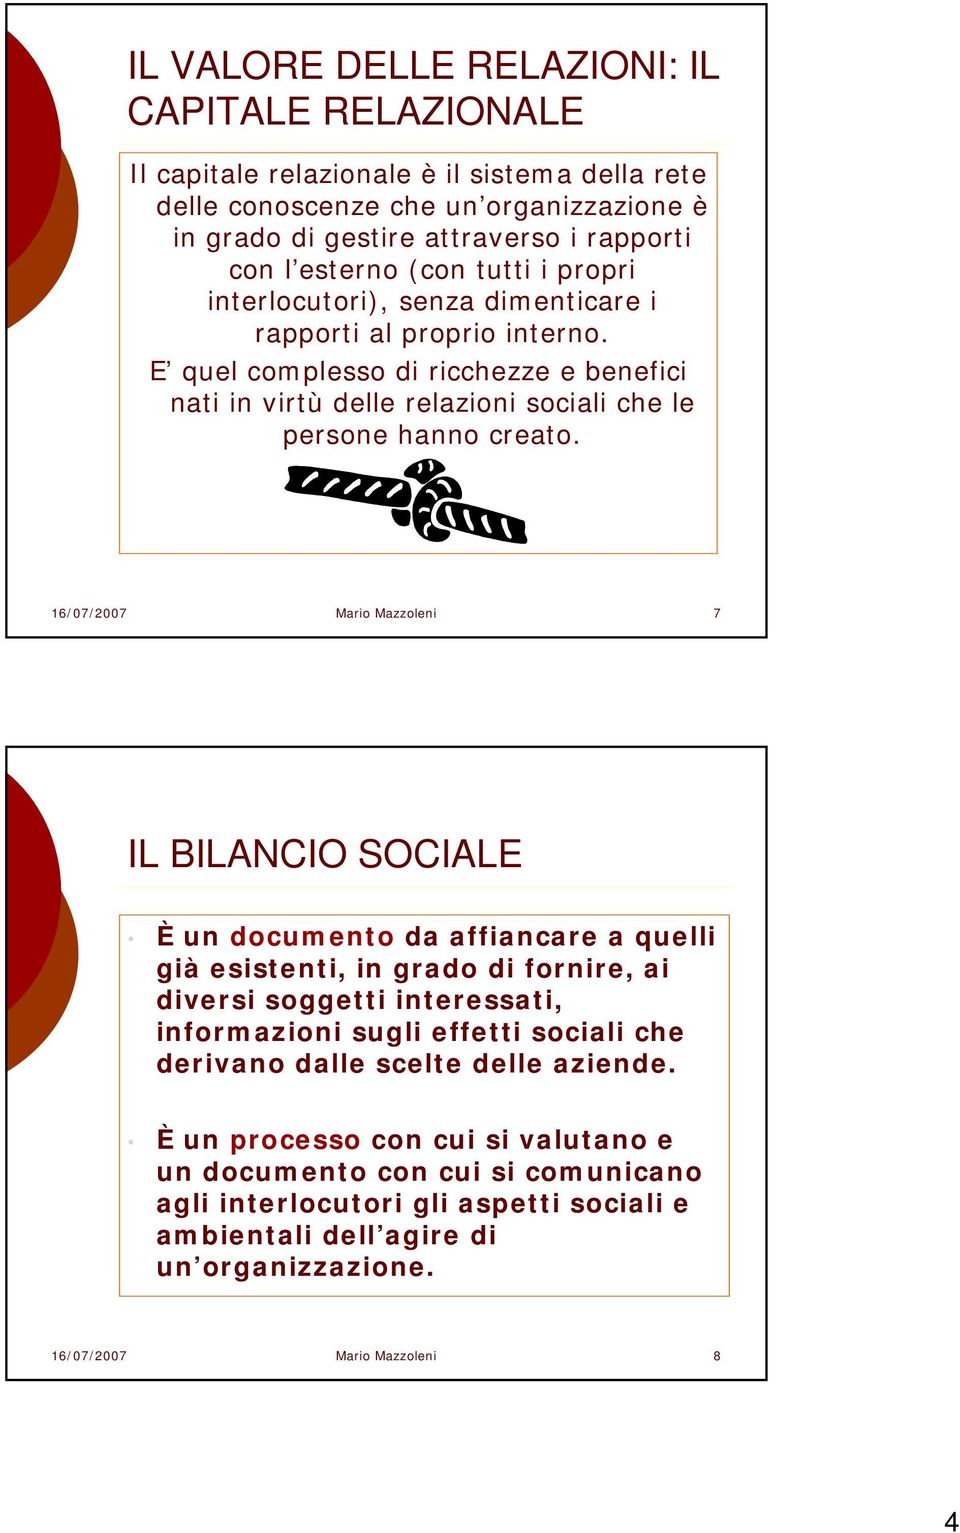 16/07/2007 Mario Mazzoleni 7 IL BILANCIO SOCIALE È un documento da affiancare a quelli già esistenti, in grado di fornire, ai diversi soggetti interessati, informazioni sugli effetti sociali che